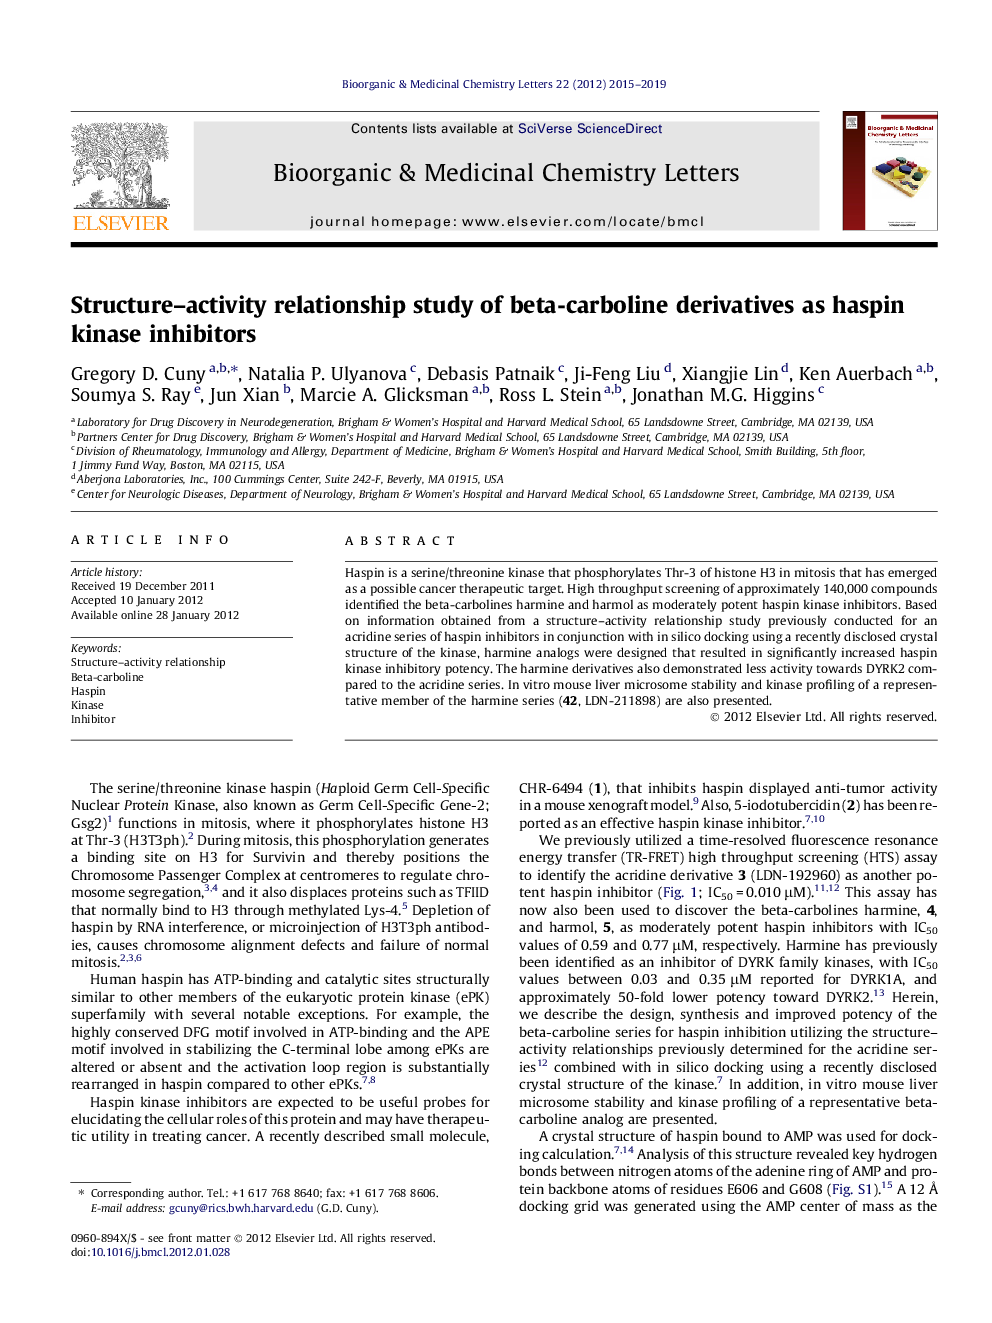 بررسی رابطه ساختار-فعالیت رابطهی بتاکاربولین مشتقات مهارکننده های هیستون کیناز